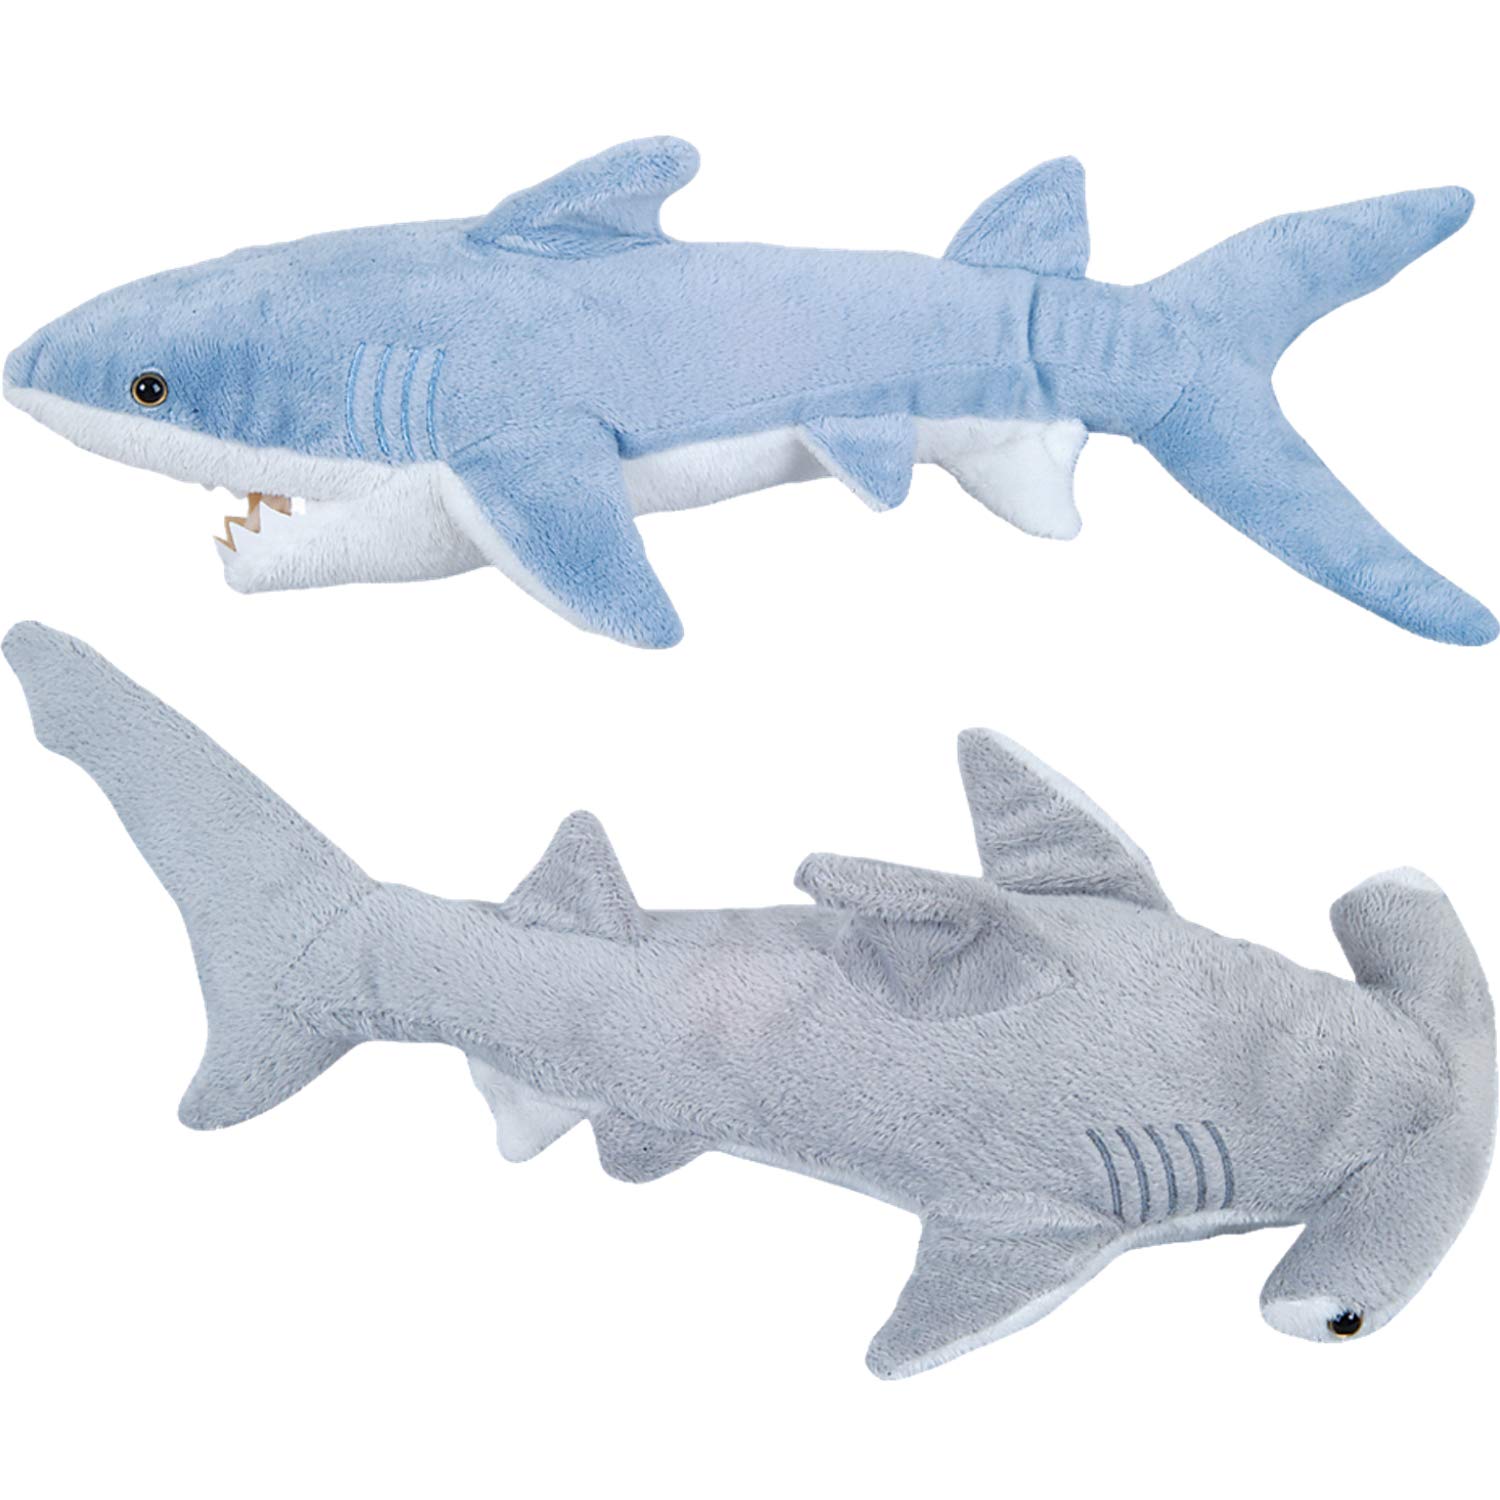 Bedwina Stuffed Animal Sharks.Interesting Shark Toys for Kids